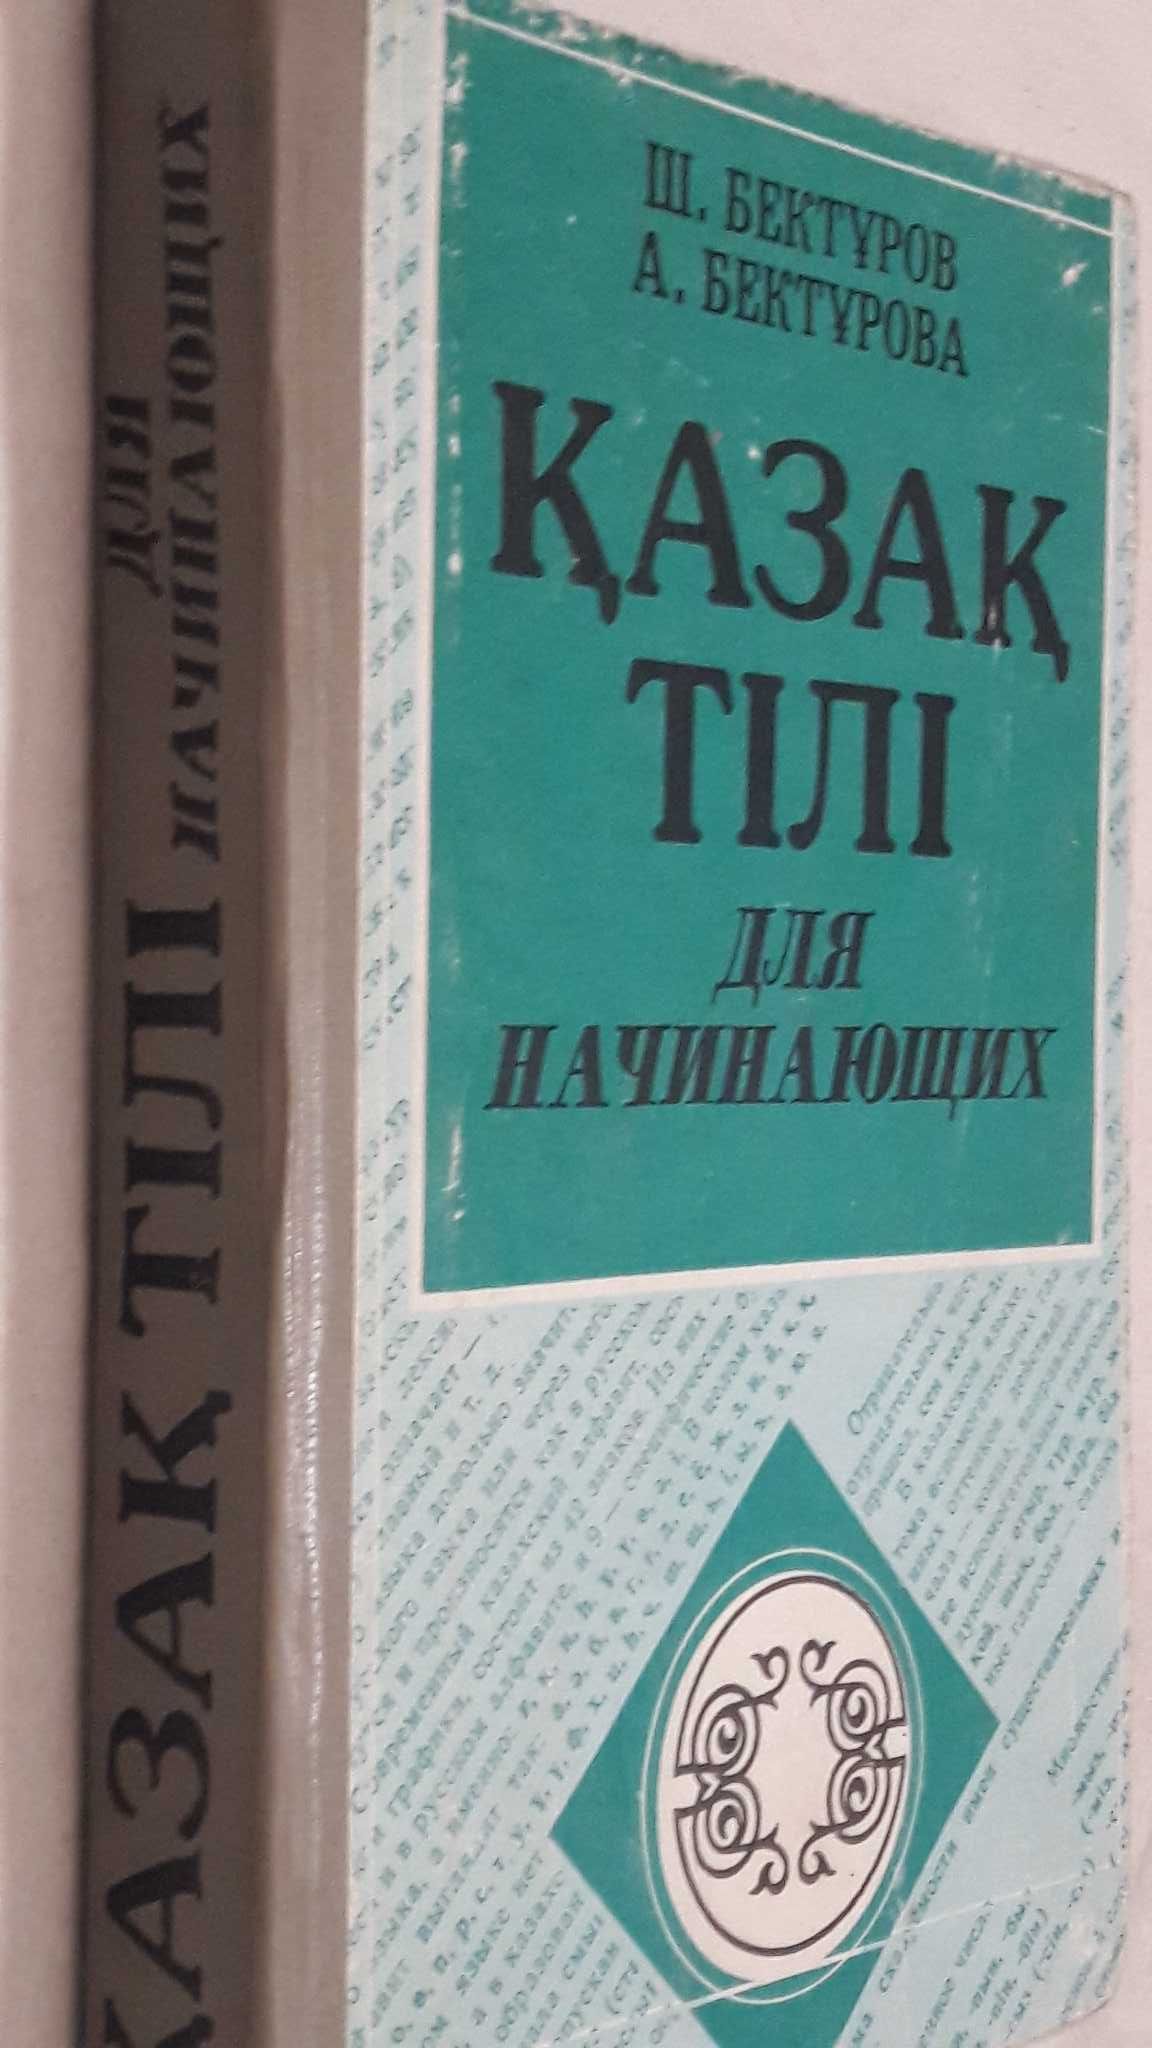 Бектурсов Ш.  Бектурсова А  Казахский язык для начинающих   1994 год